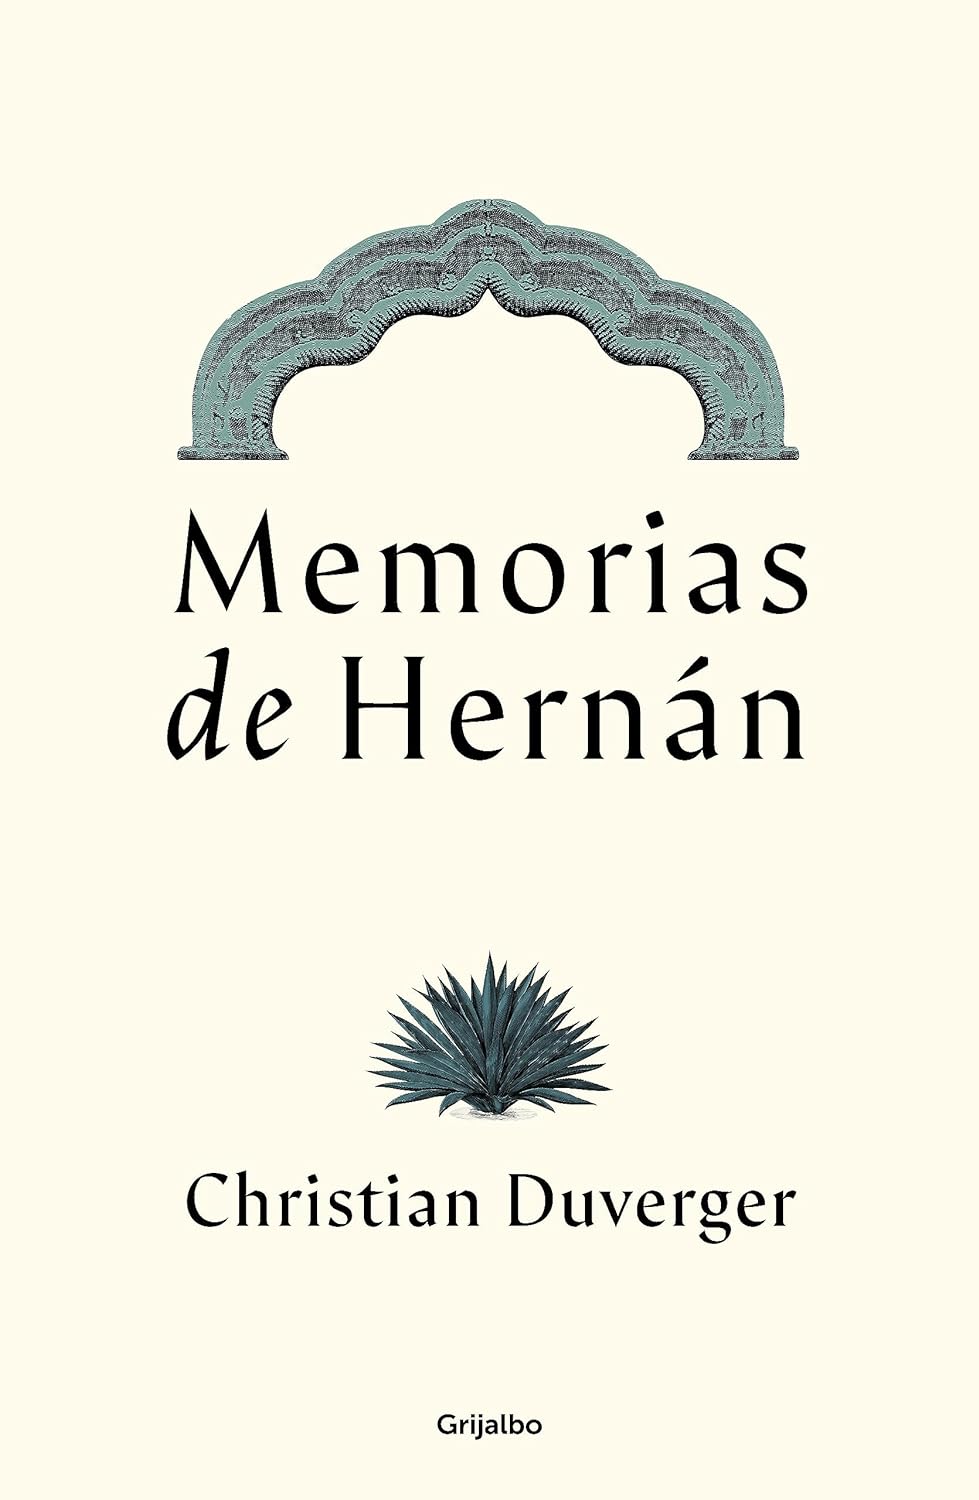 MEMORIAS DE HERNÁN - Christian Duverger